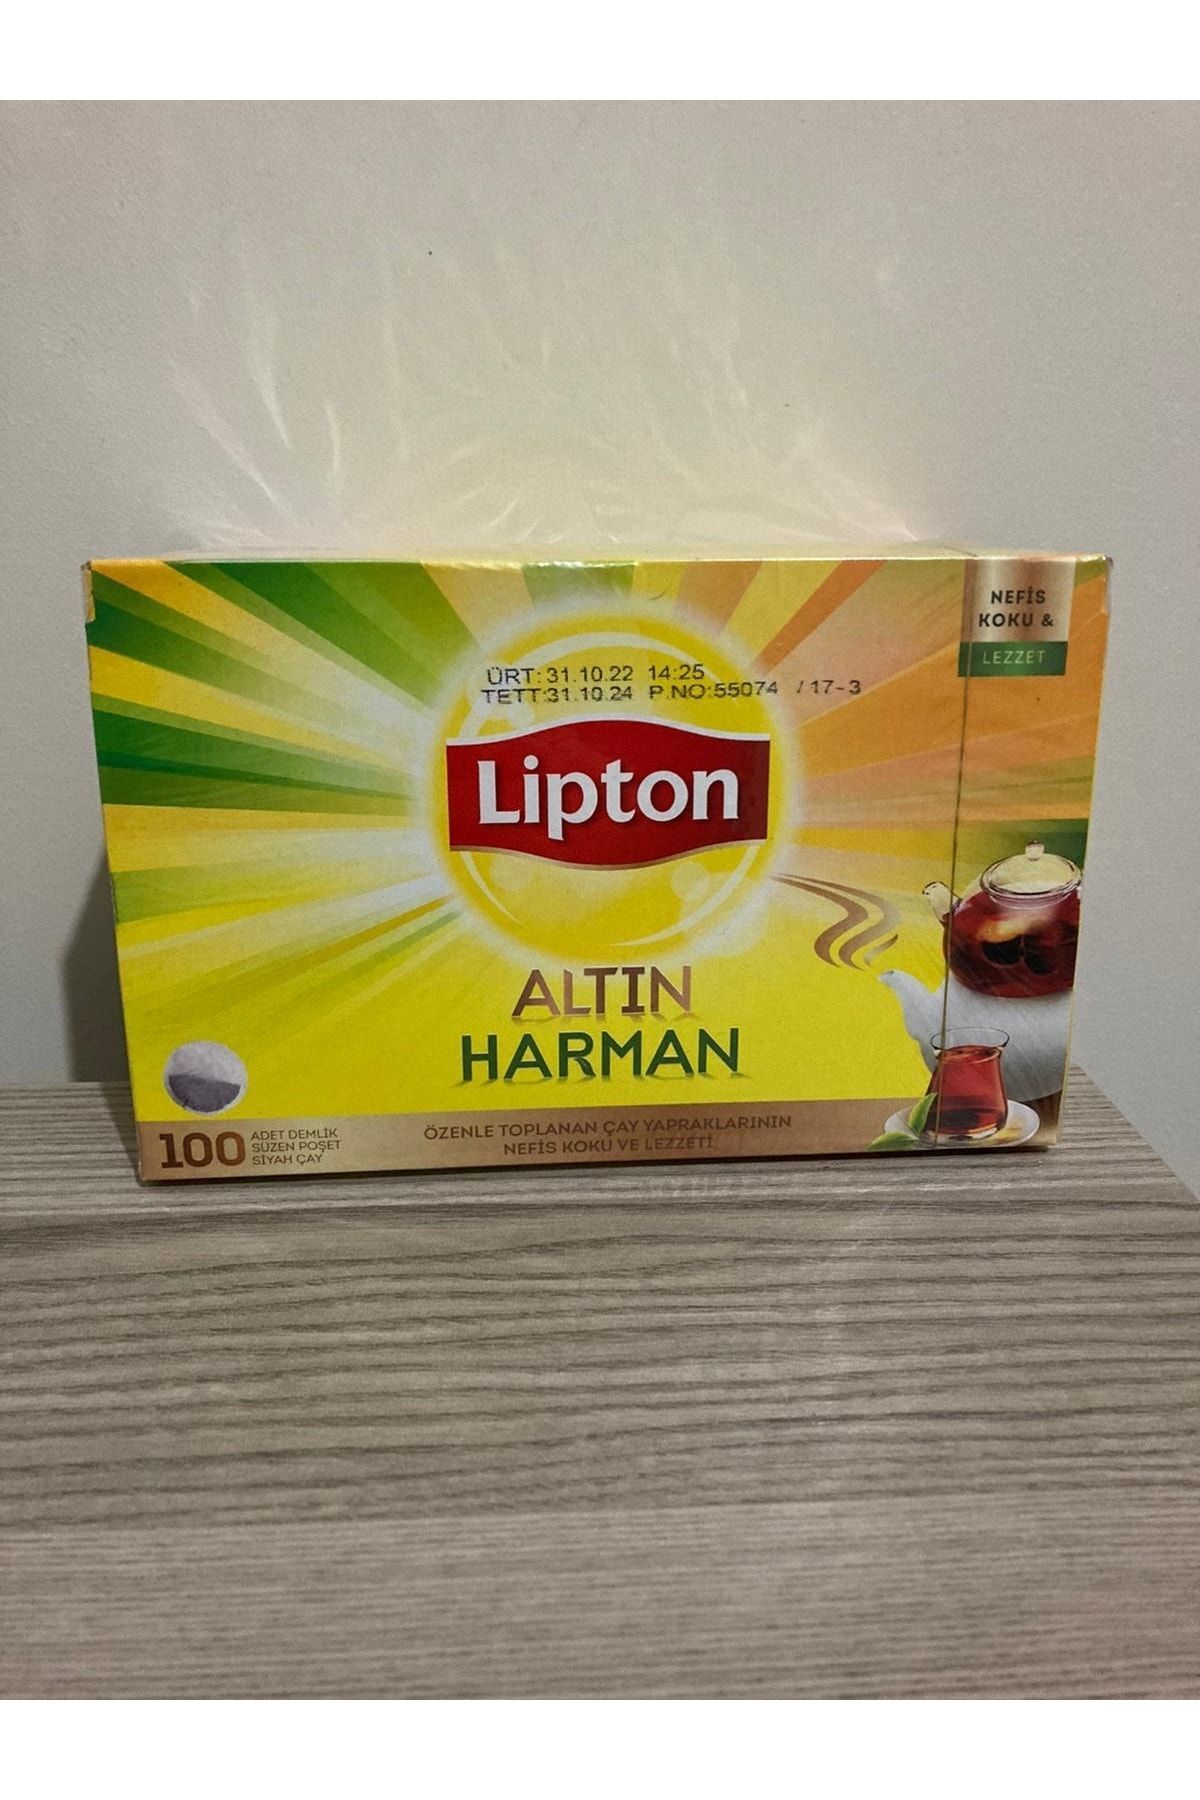 Lipton Altın Harman Demlik Poşet 100'lü